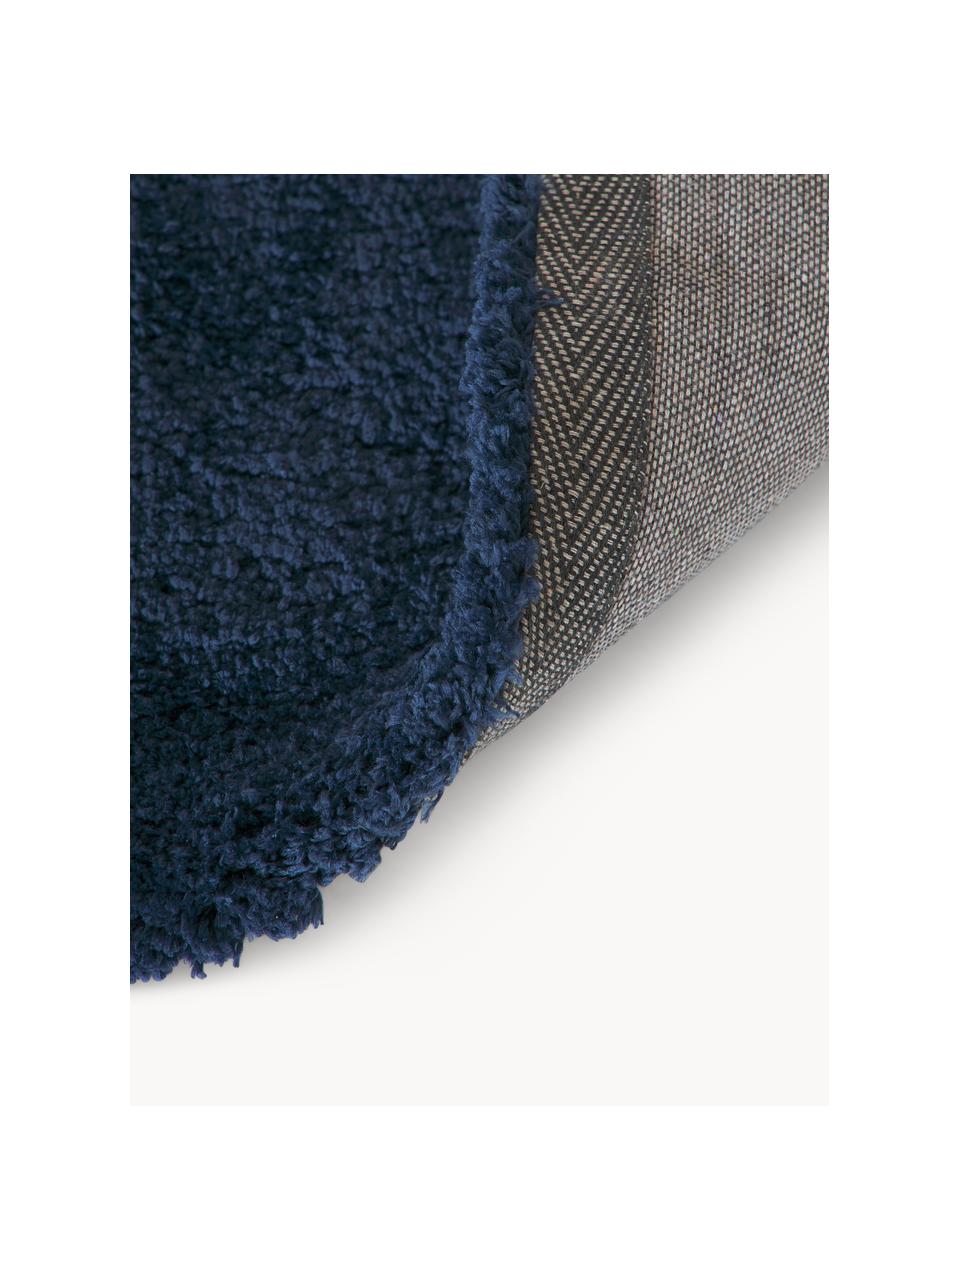 Puszysty dywan z długim włosiem Leighton, Ciemny niebieski, S 160 x D 230 cm (Rozmiar M)